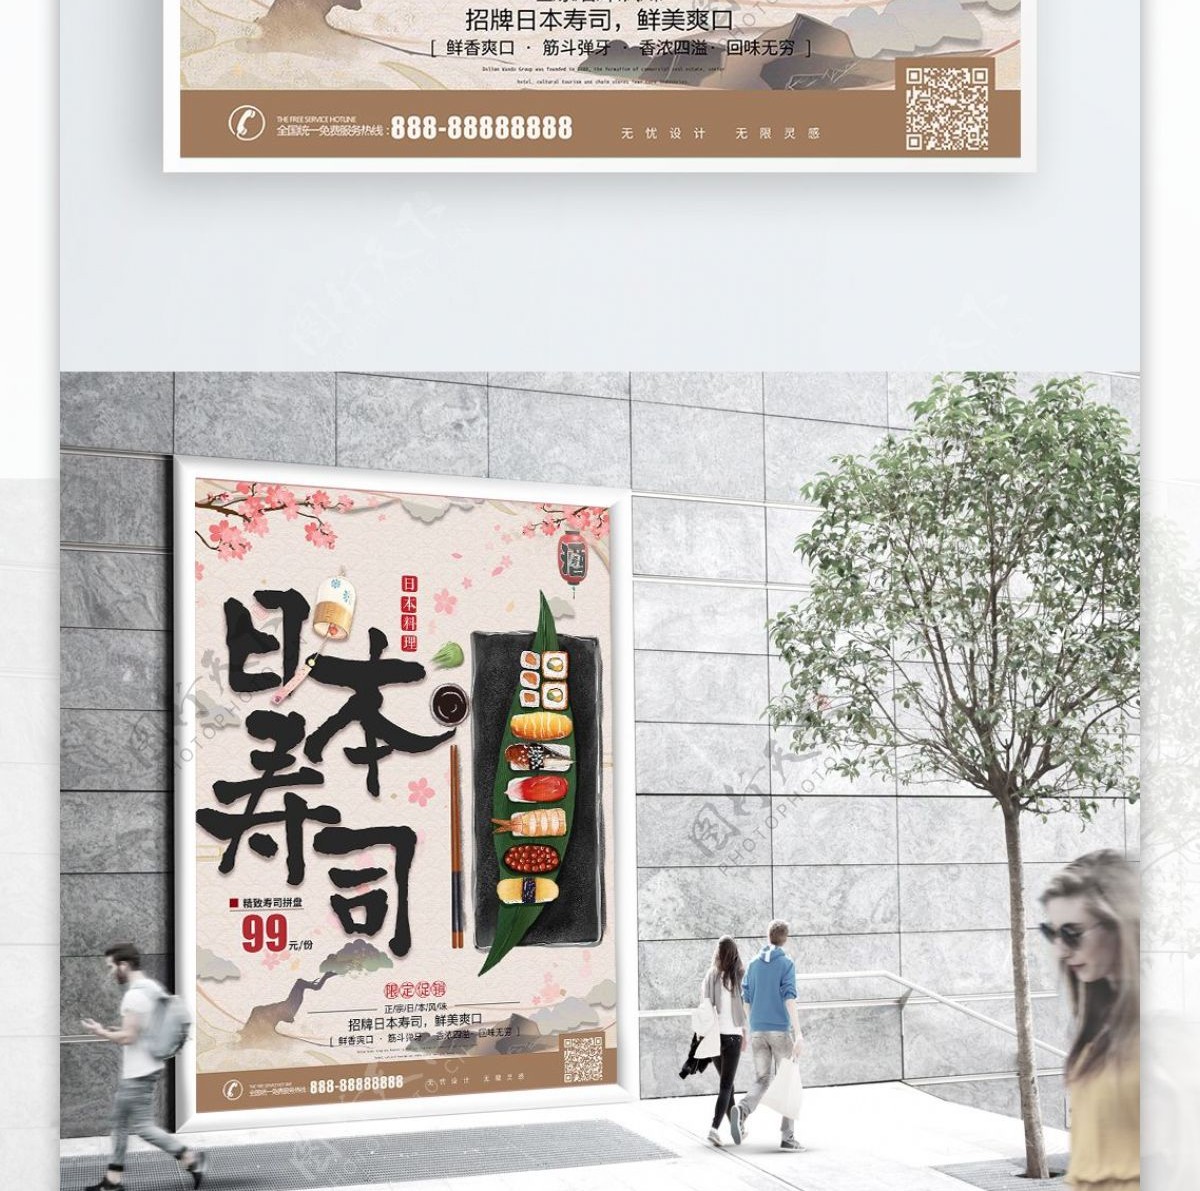 手绘复古风格日本寿司美食促销海报